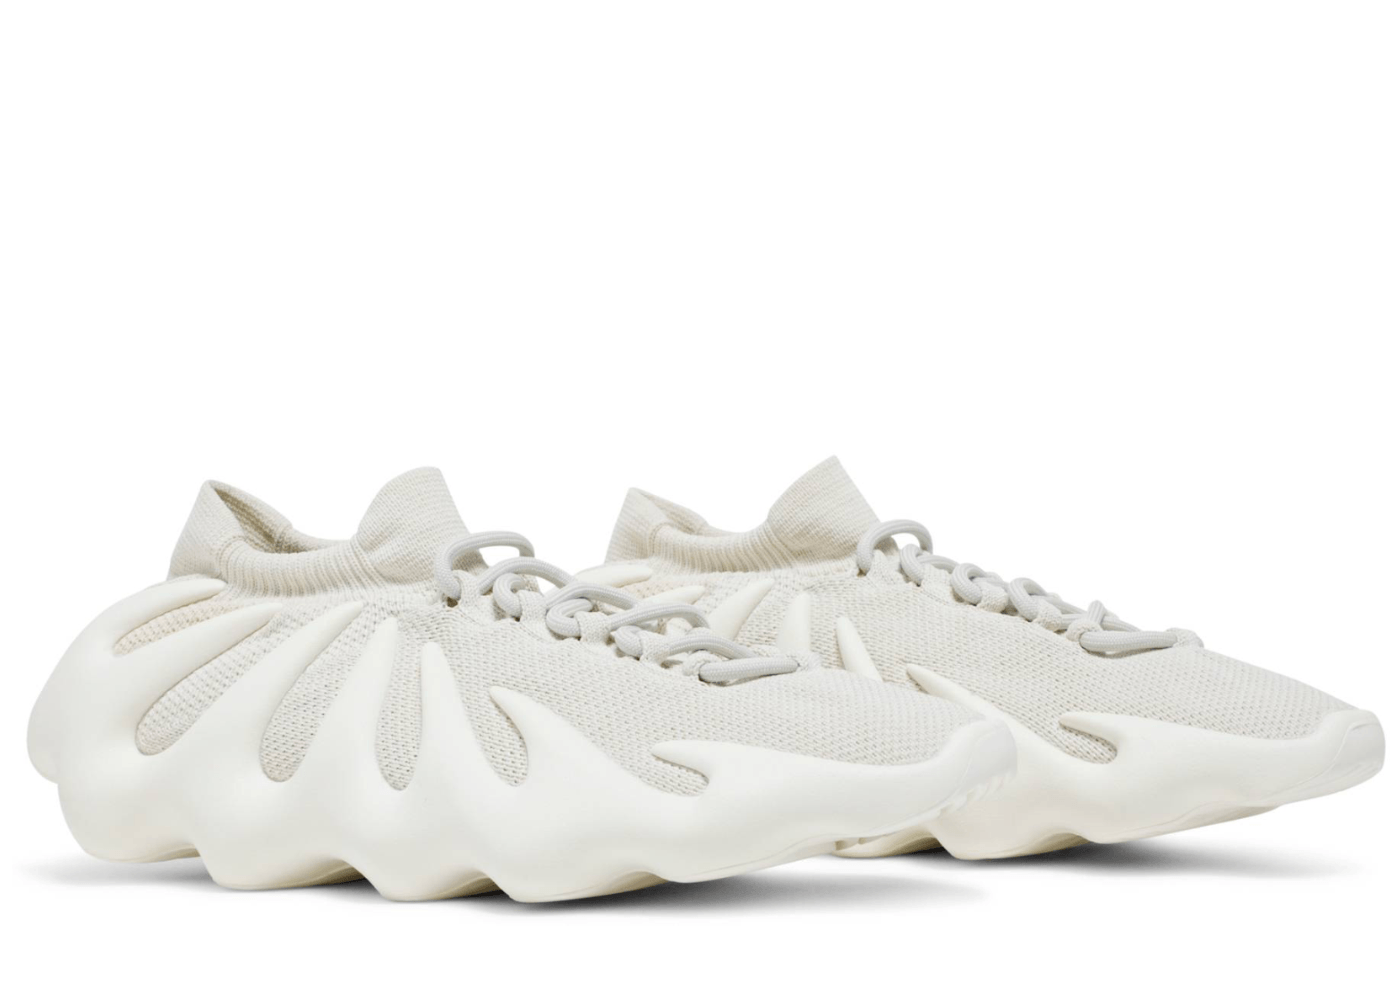 adidas Yeezy 450 Cloud White - Swest Kicks